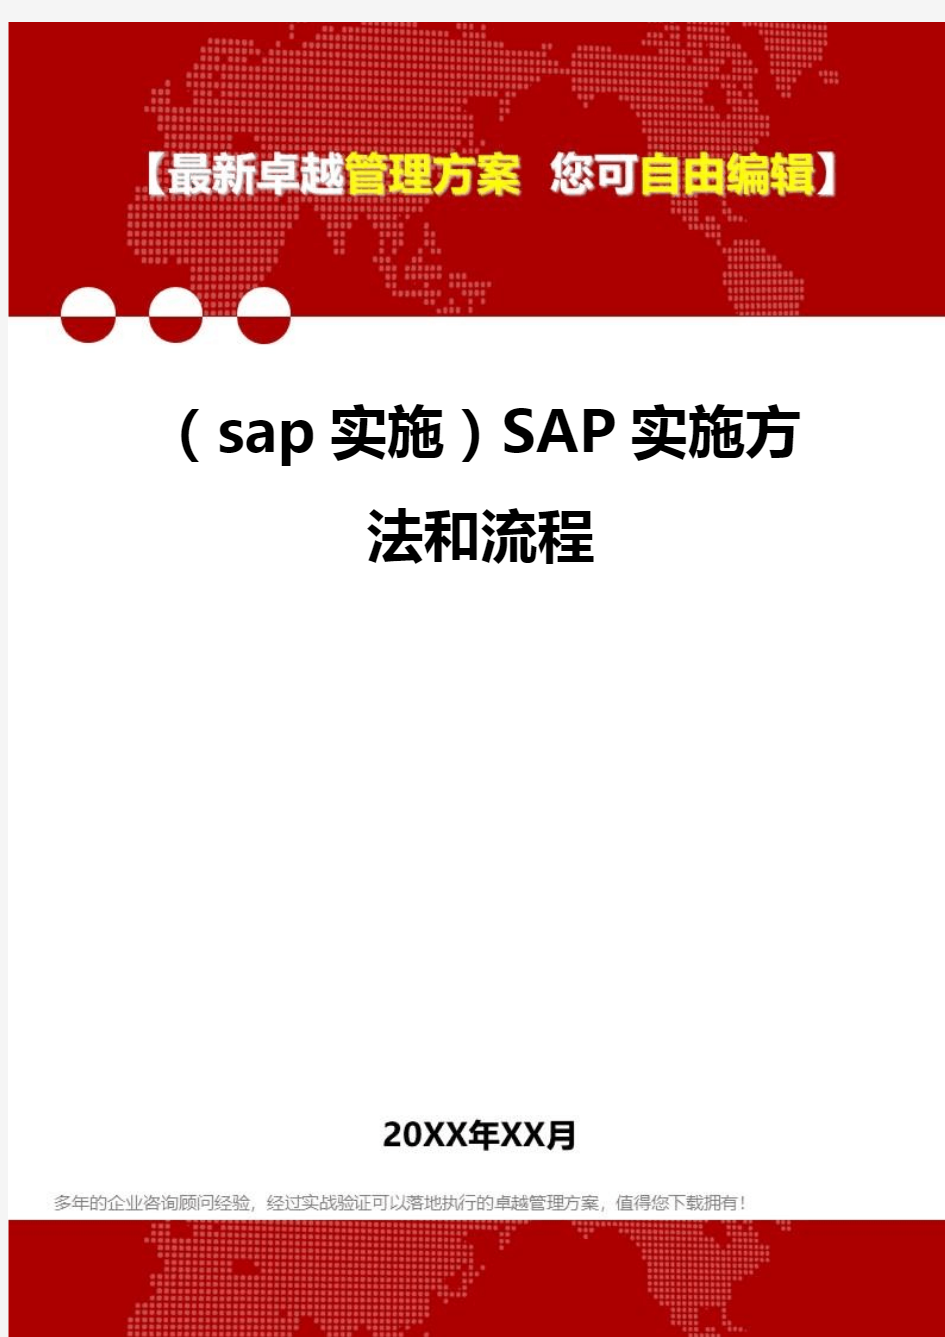 2020年(sap实施)SAP实施方法和流程